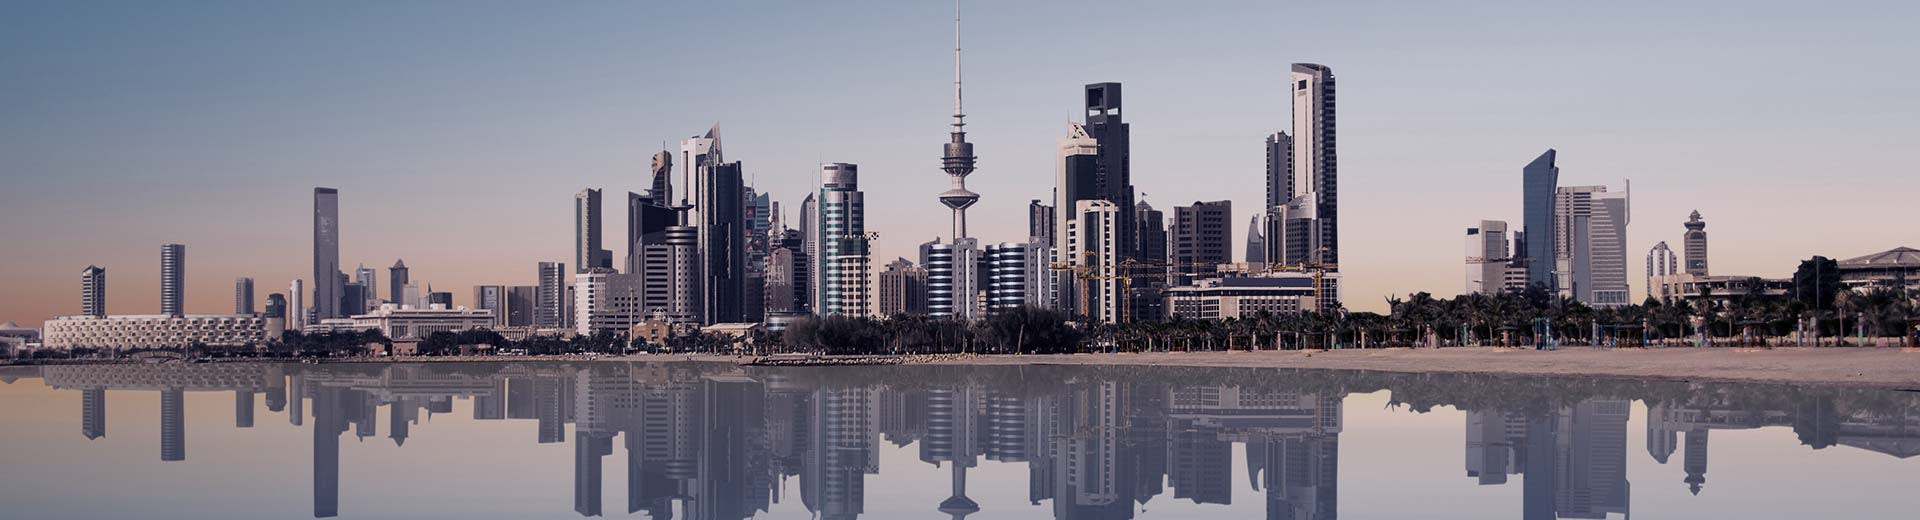 El horizonte moderno e imponente de la ciudad de Kuwait, se encontraba ante un cuerpo de agua.